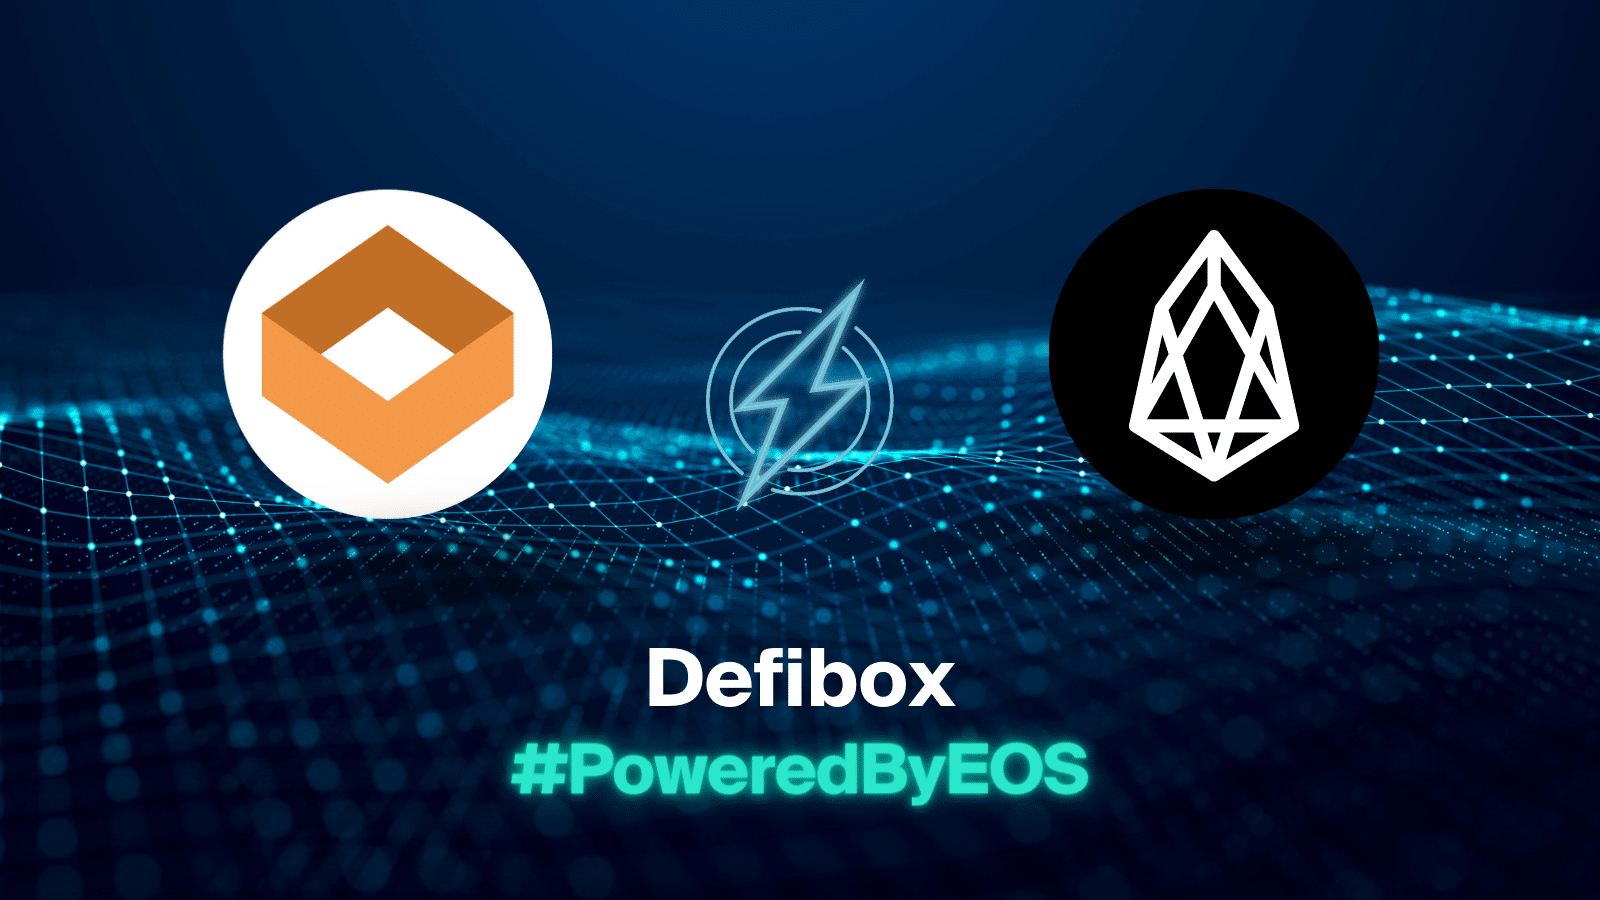 Defibox 如何实现安全可扩展的 DeFi – #PoweredByEOS